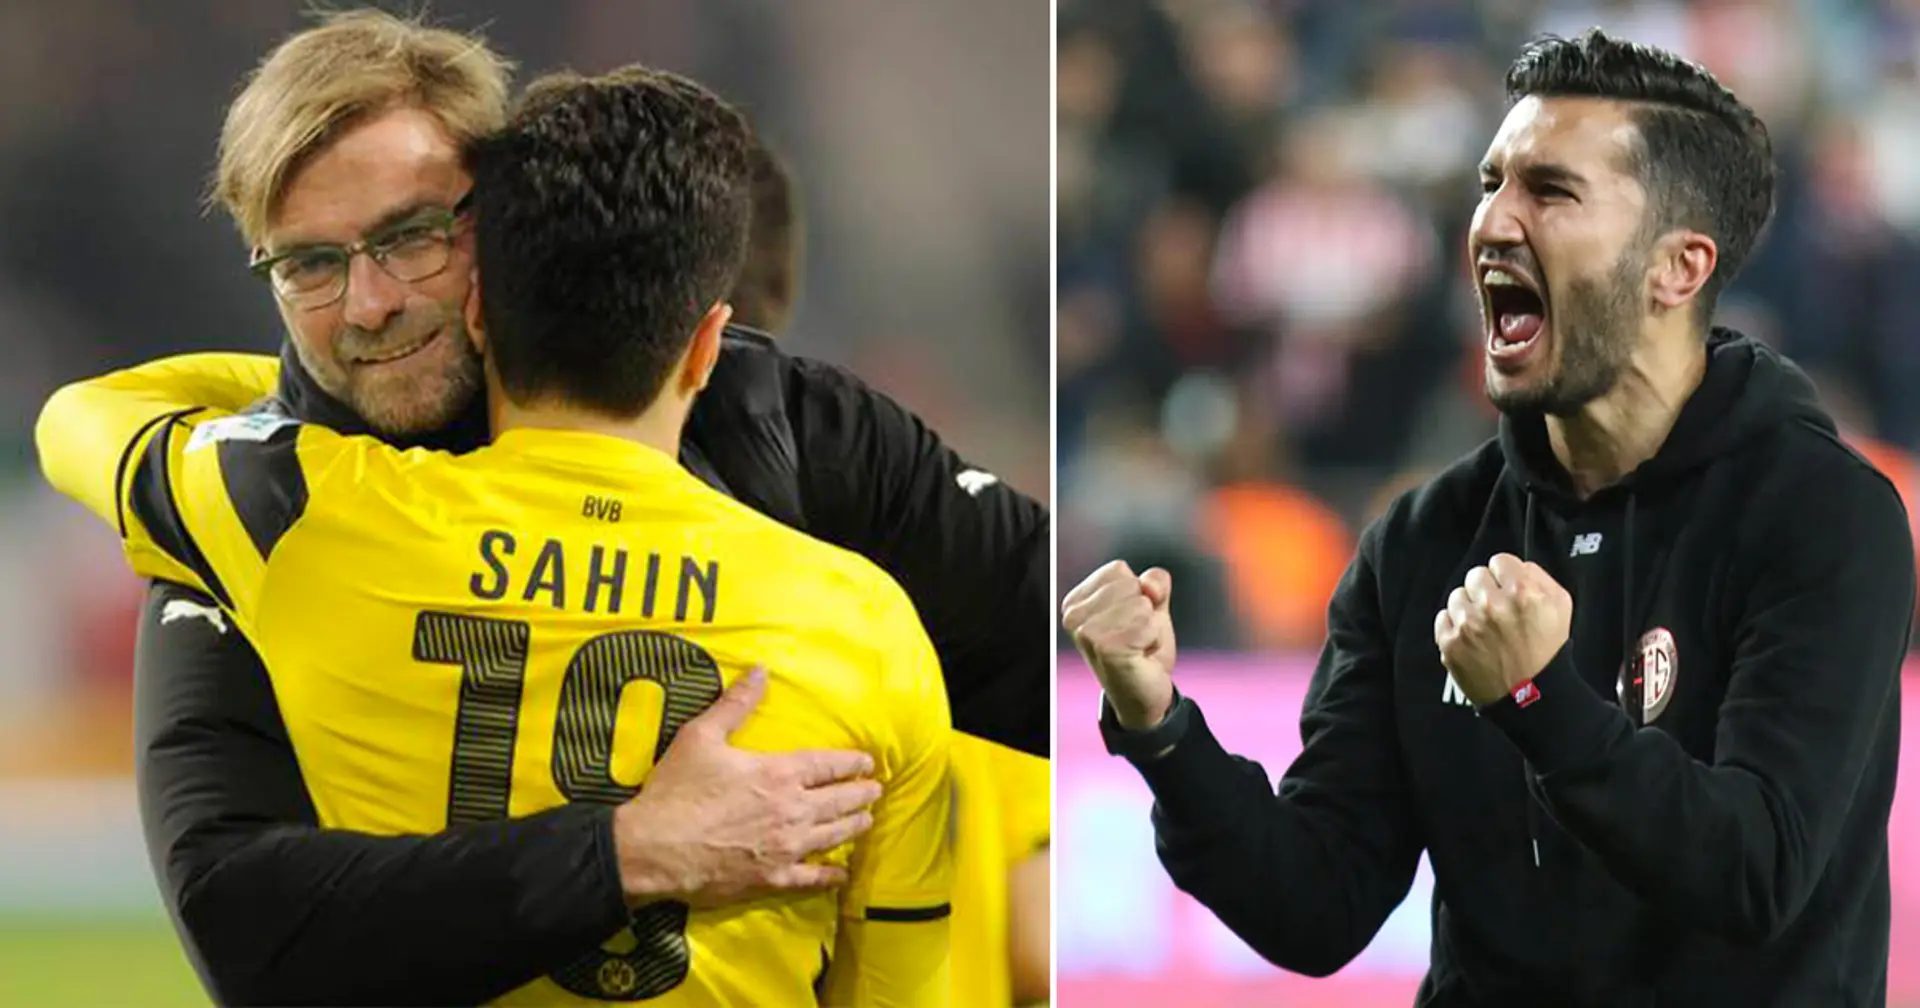 Vergleiche mit Klopp, attraktiver Fußball: Könnte Nuri Sahin in der Zukunft den BVB übernehmen?